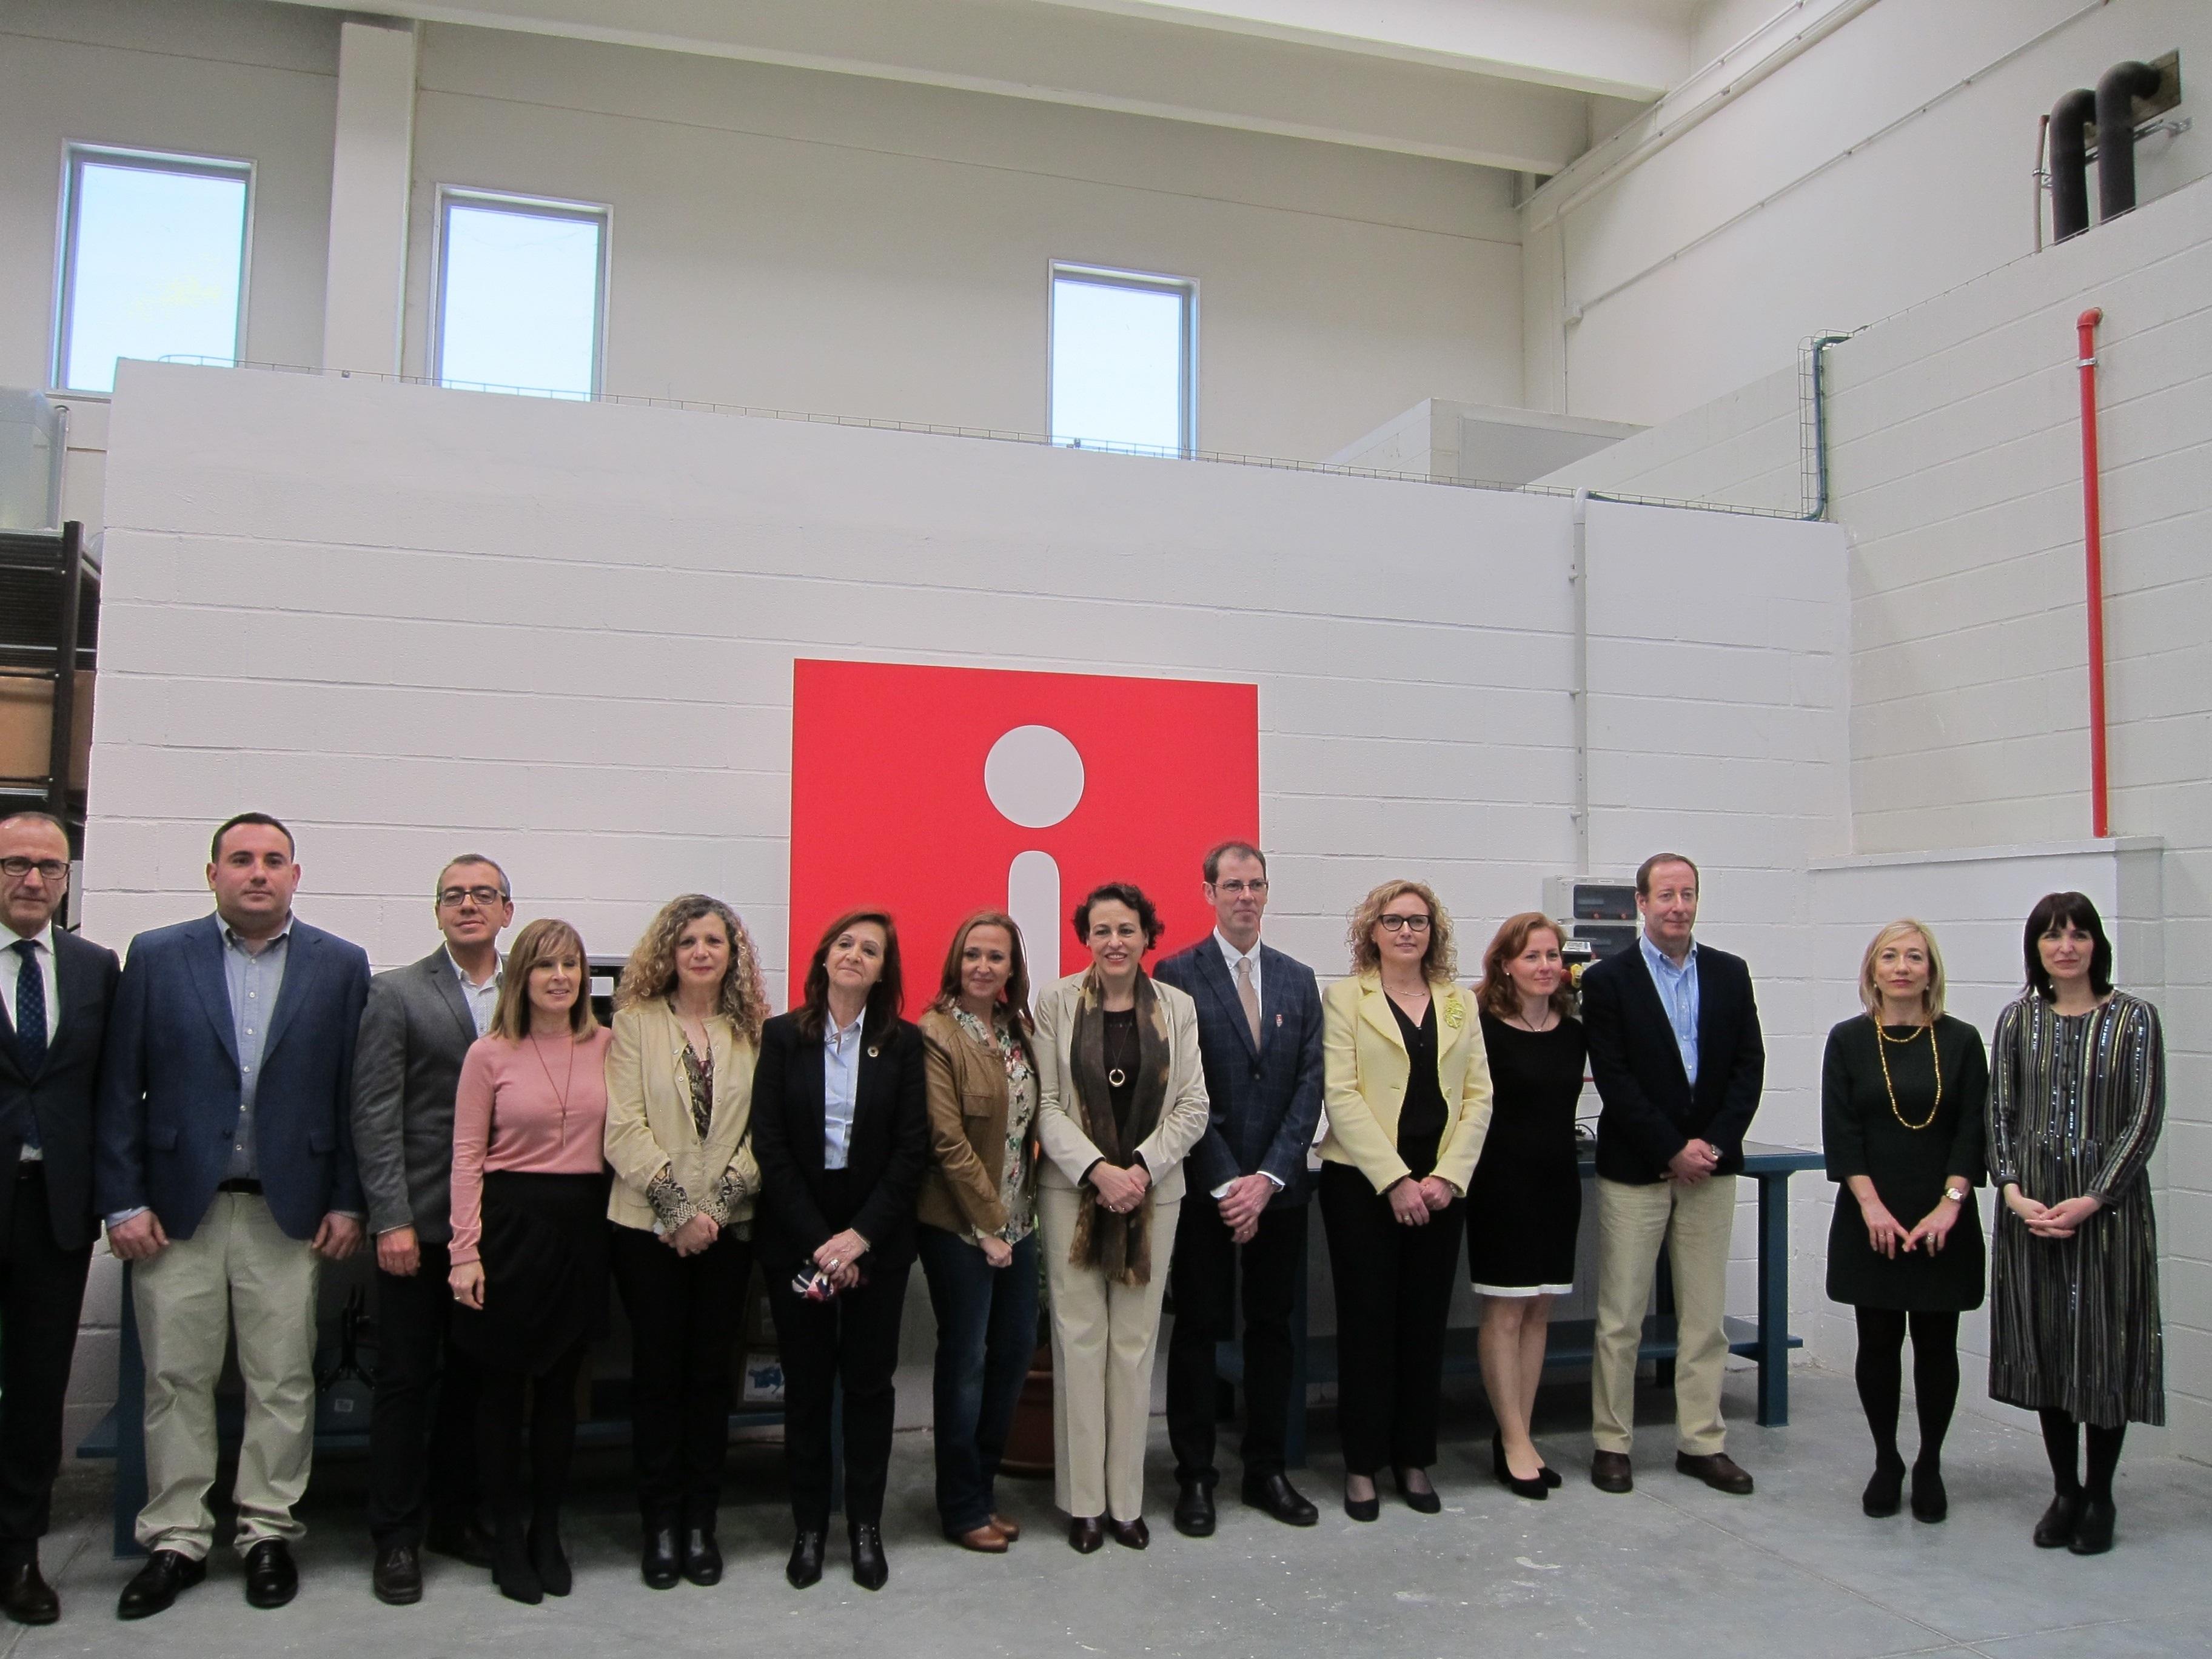 La ministra de Trabajo Migraciones y Seguridad Social Magdalena Valerio ha visitado este lunes el Centro de Innovación para la Formación Profesional de Aragón (CIFPA) en Zaragoza - Europa Press